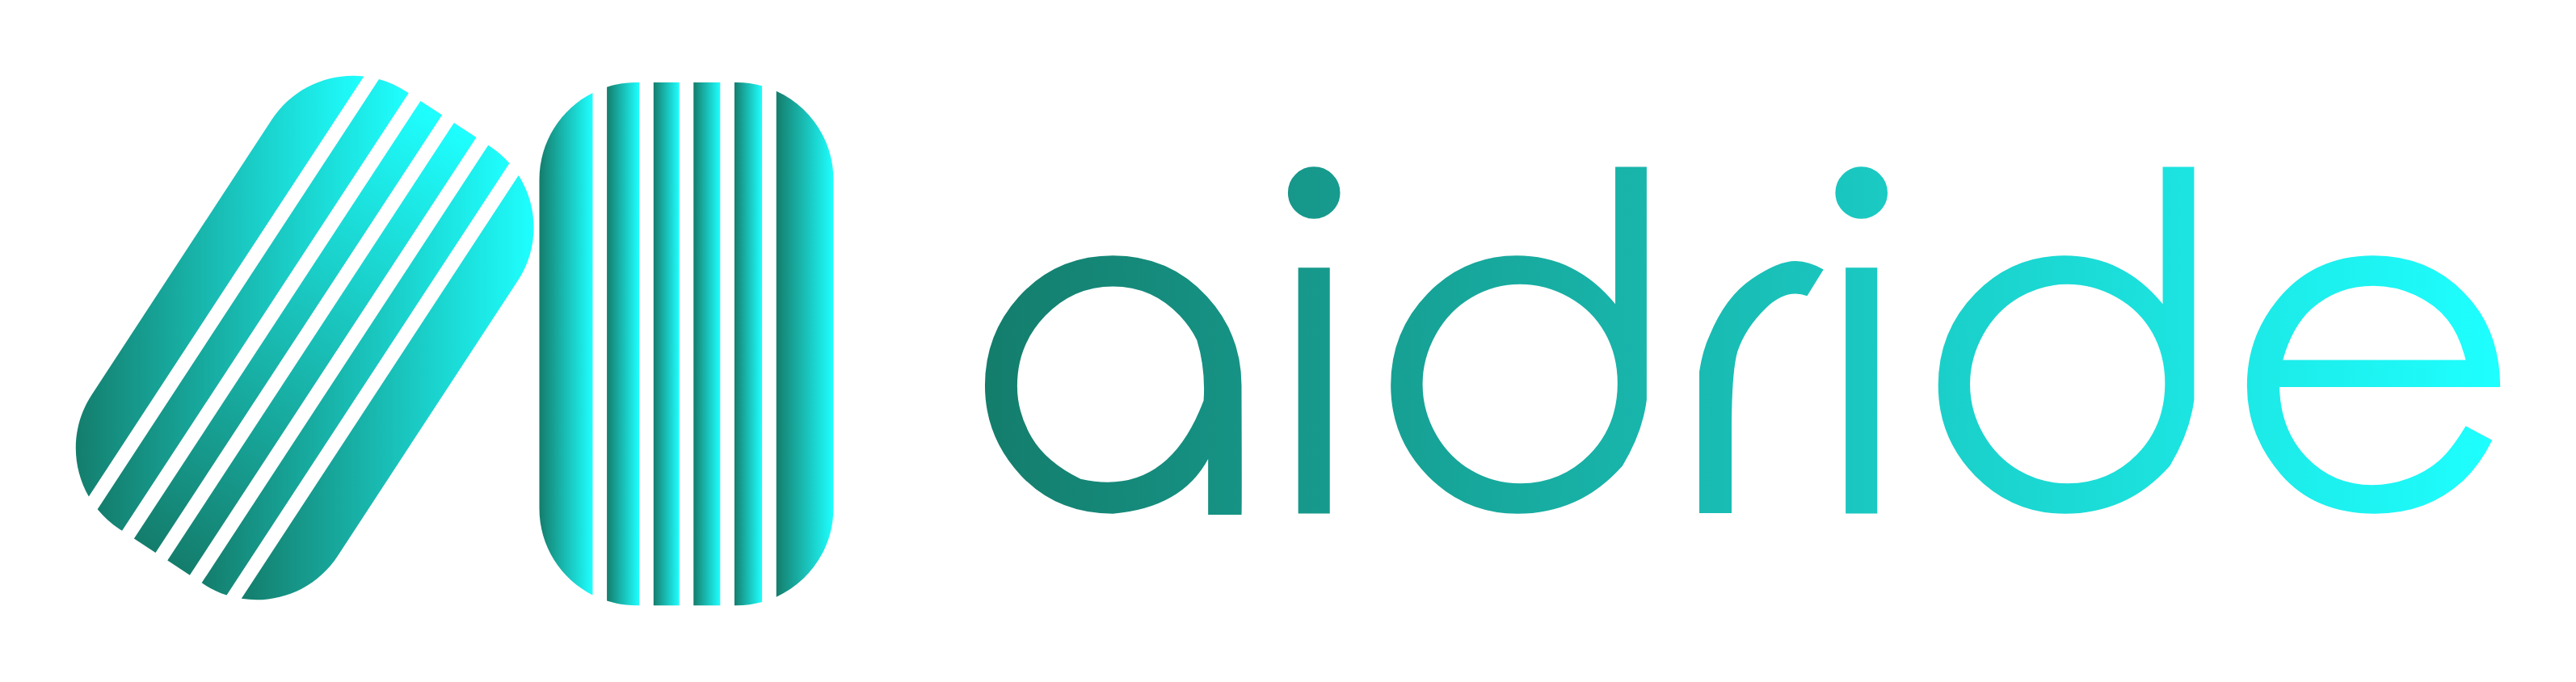 Company logo of Aidride